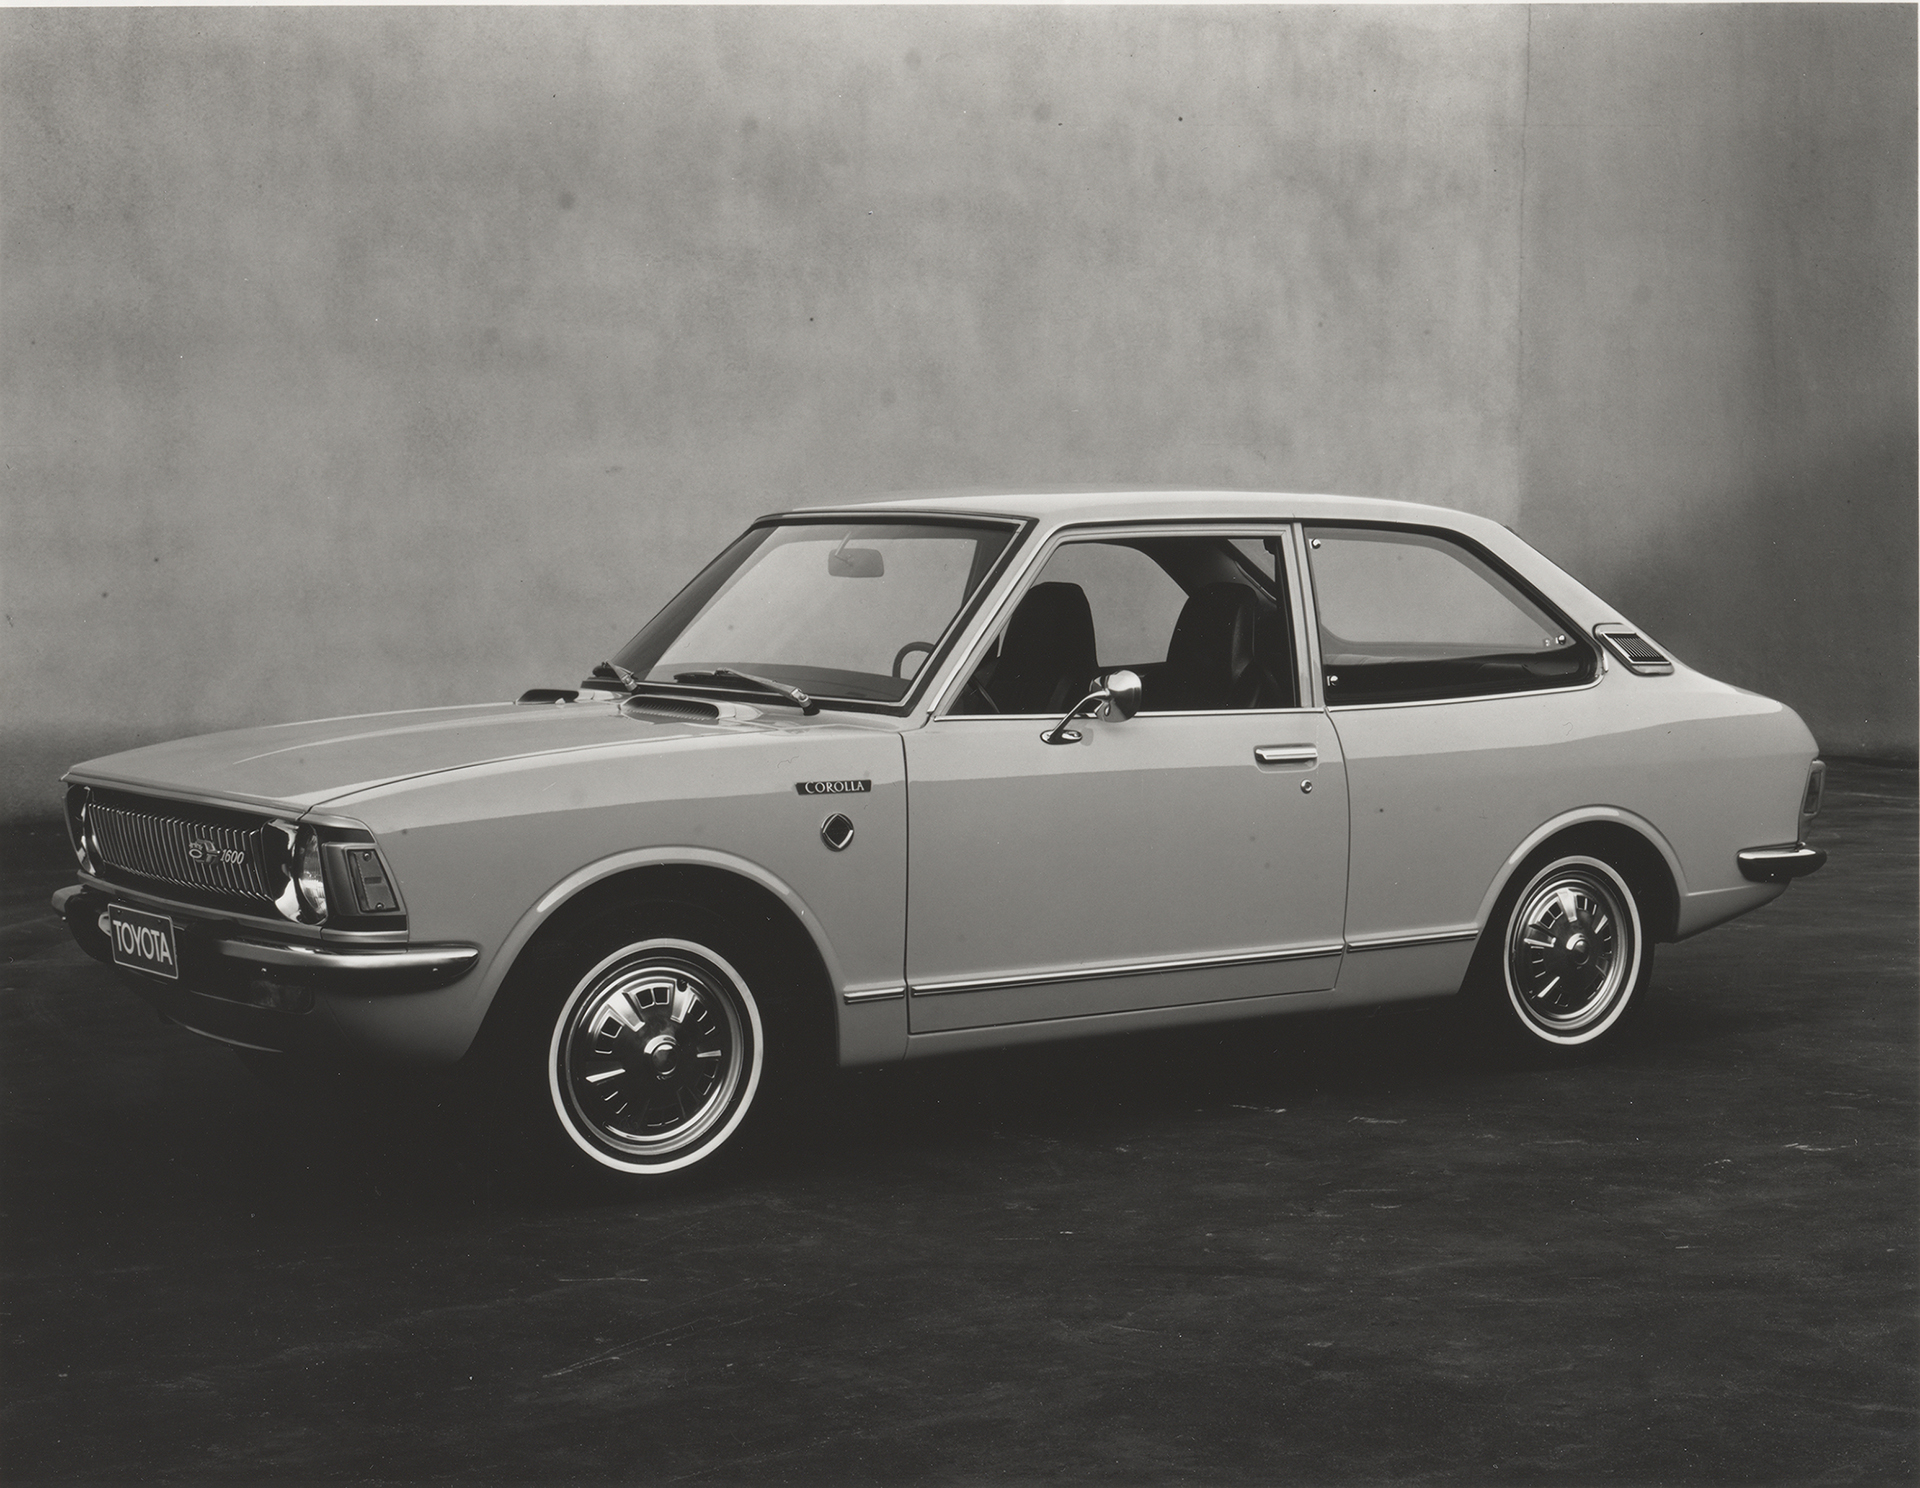 USA - The 2nd Generation Corolla (1971 - 1974)